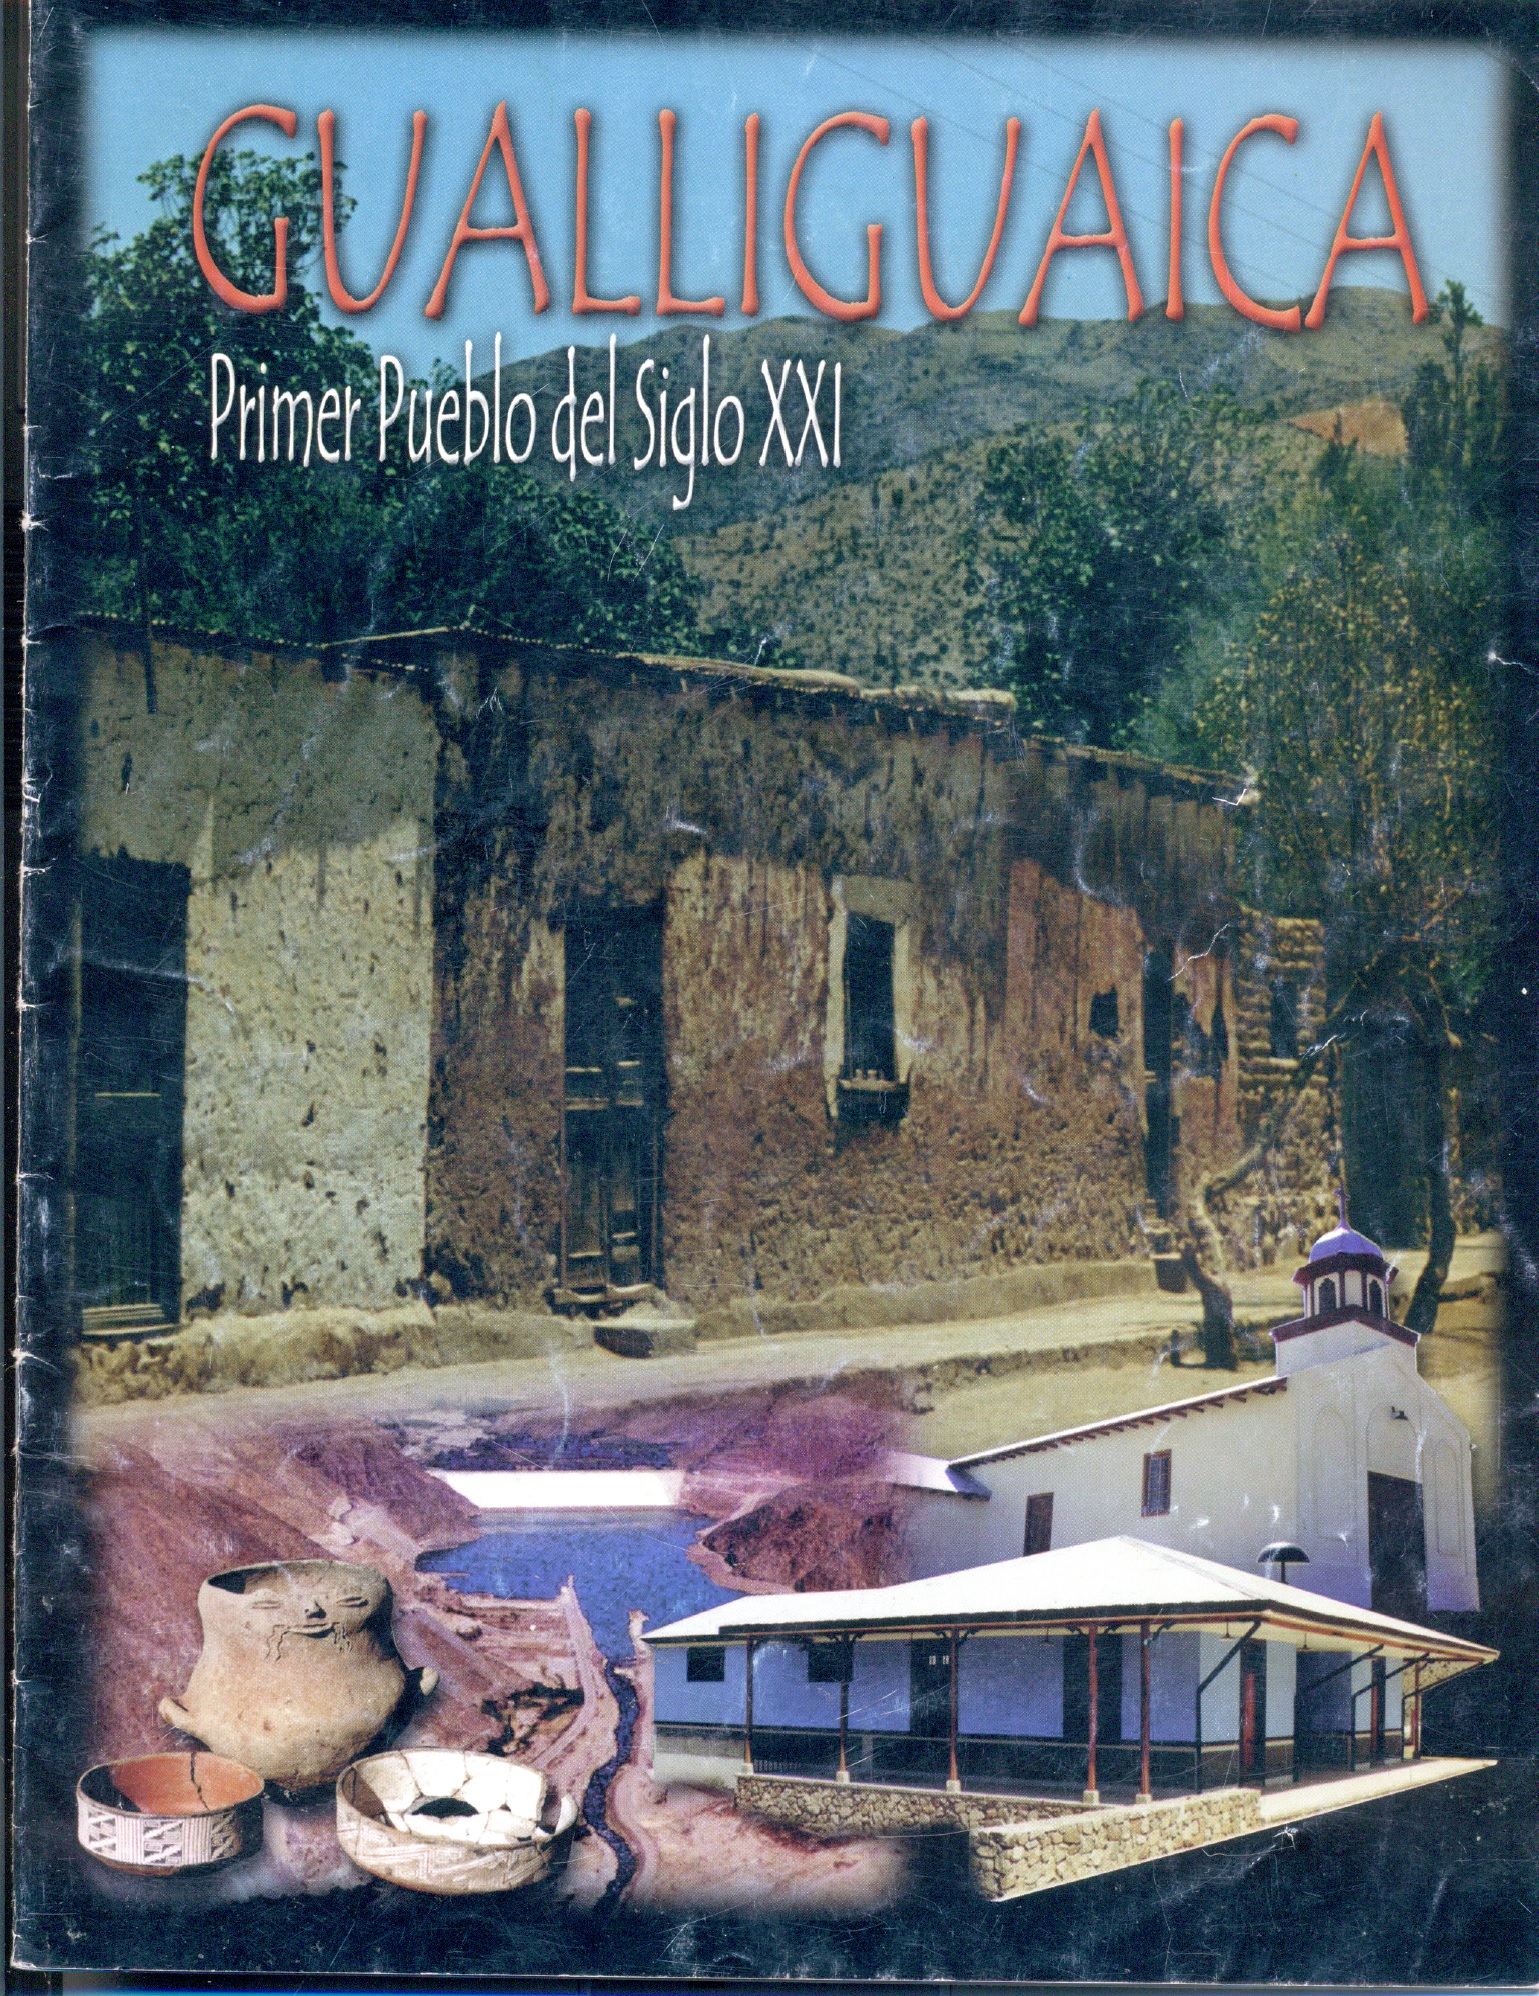 Revista "Gualliguaica, primer pueblo del siglo XXI"